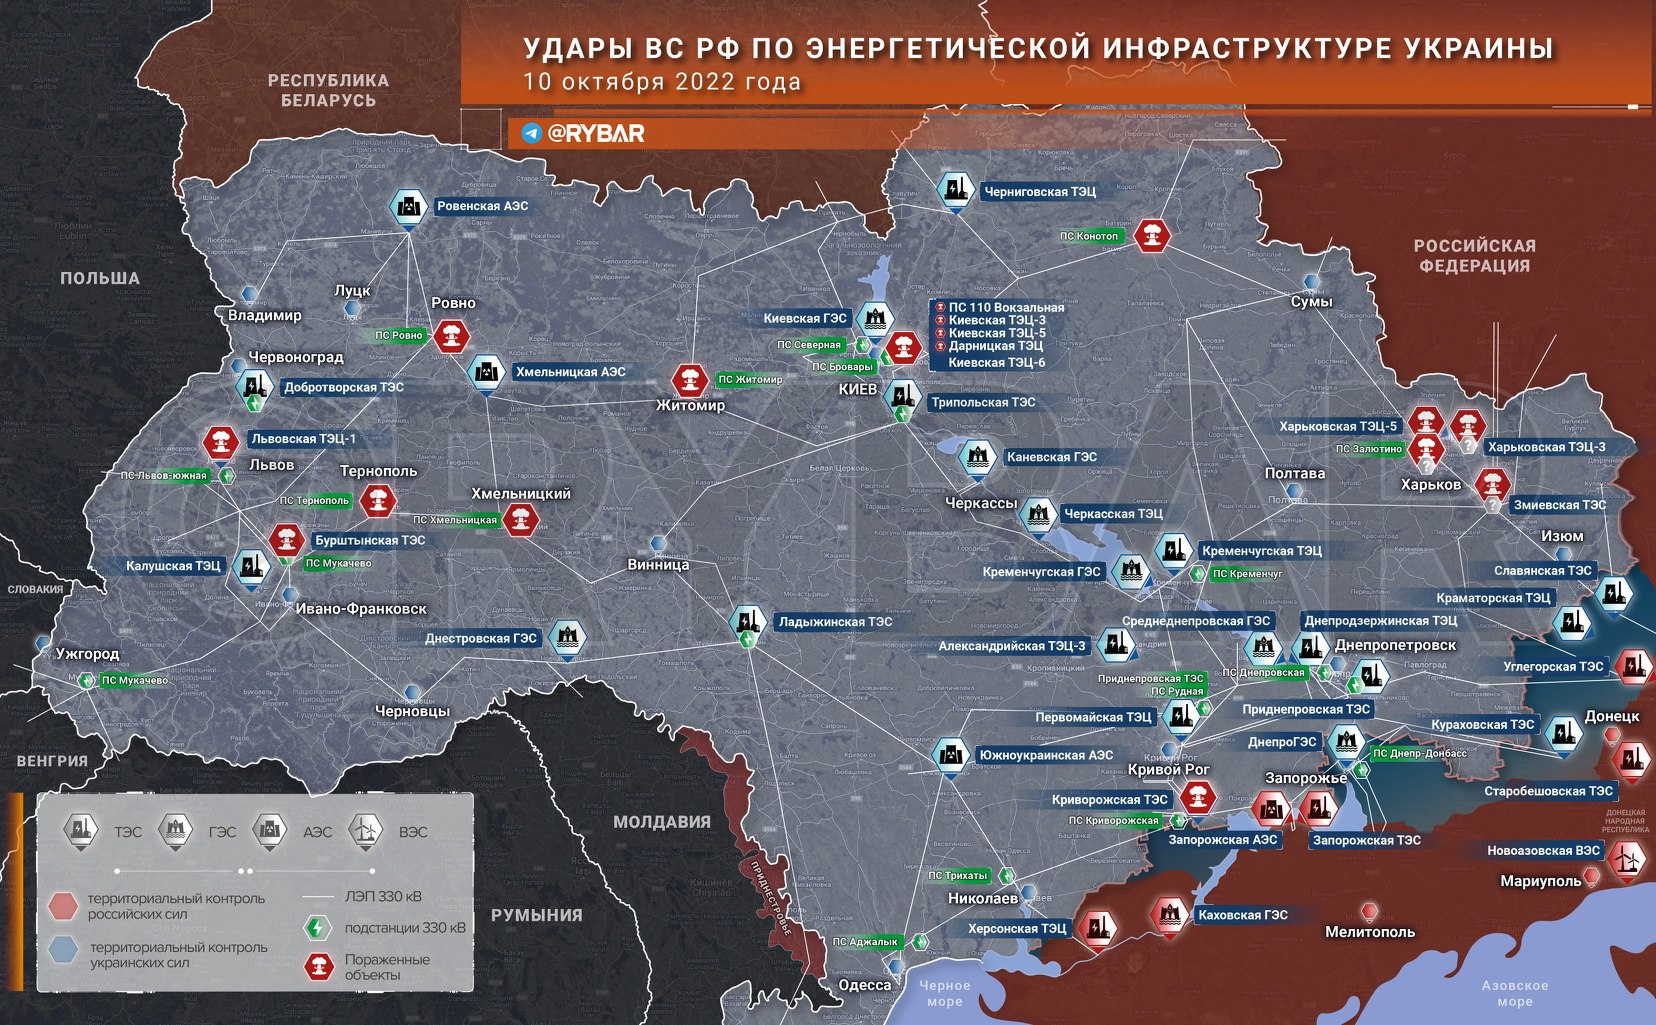 «Возмездие началось!»: последние новости военной спецоперации на Украине на сегодня 11 октября 2022 года